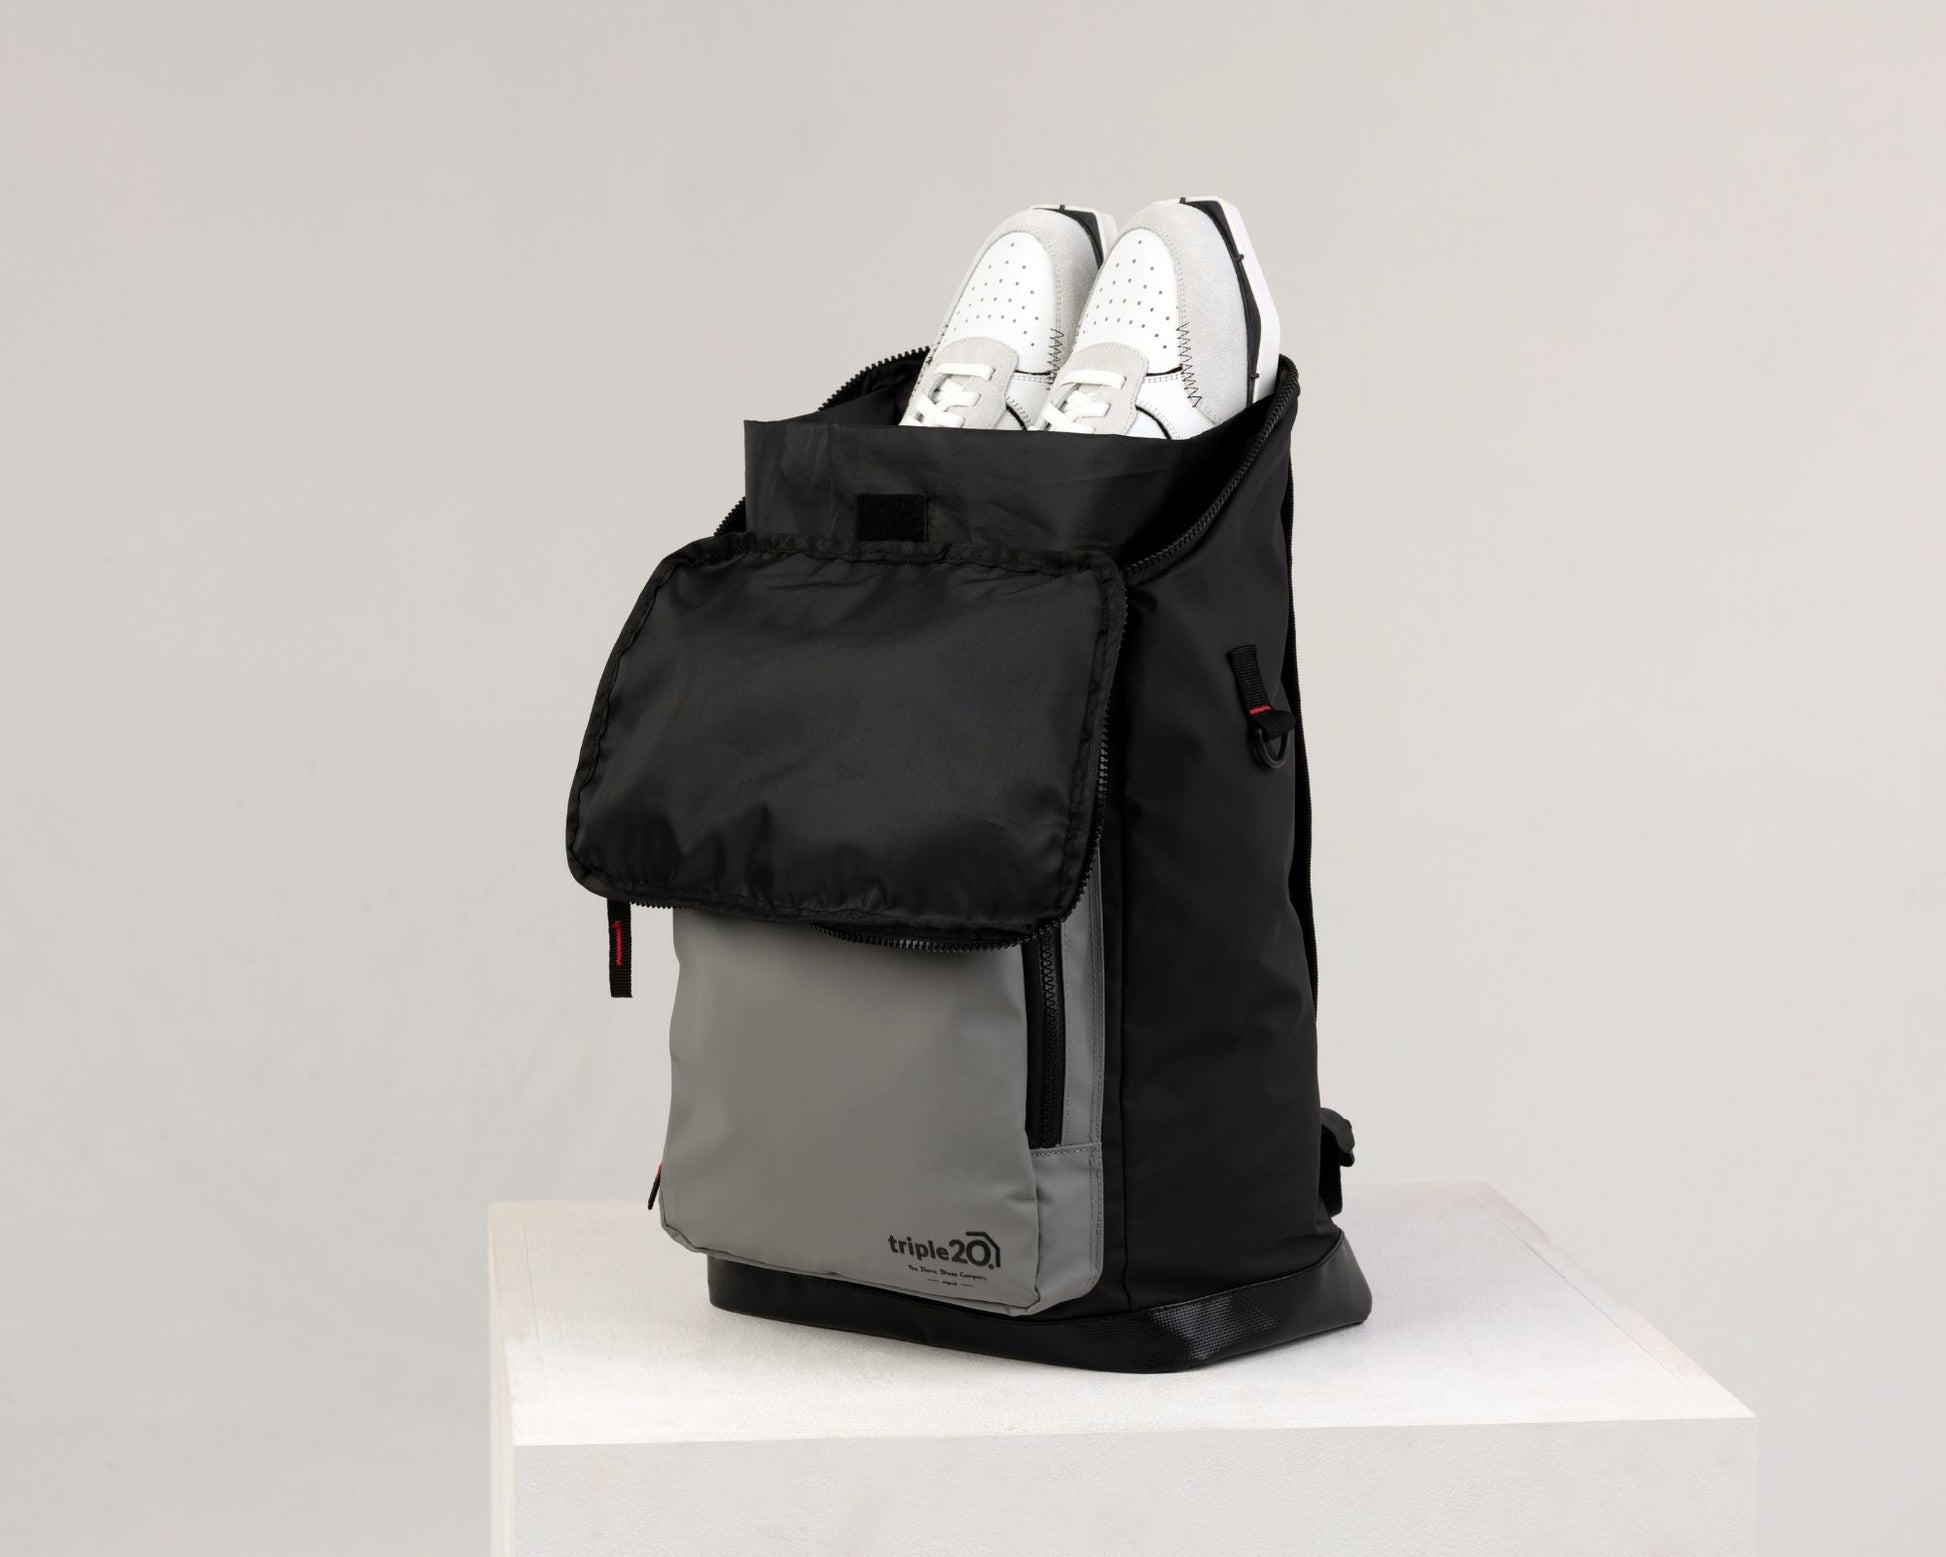 Produktfoto eines Rucksacks, der speziell für den Dartsport entworfen wurde. Man sieht, dass aus der Öffnung ein Paar Dartschuhe ragt, dieses kann in einer eigens entwickelten Innentasche so bestens aufbewahrt und getragen werden.